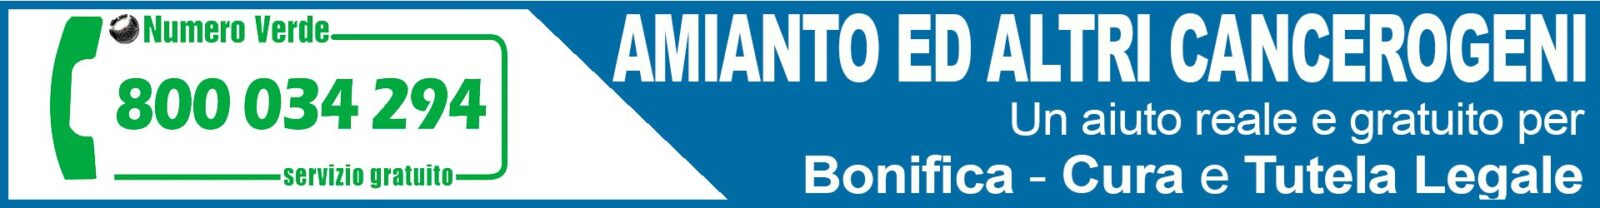 Osservatorio Nazionale Amianto Liguria